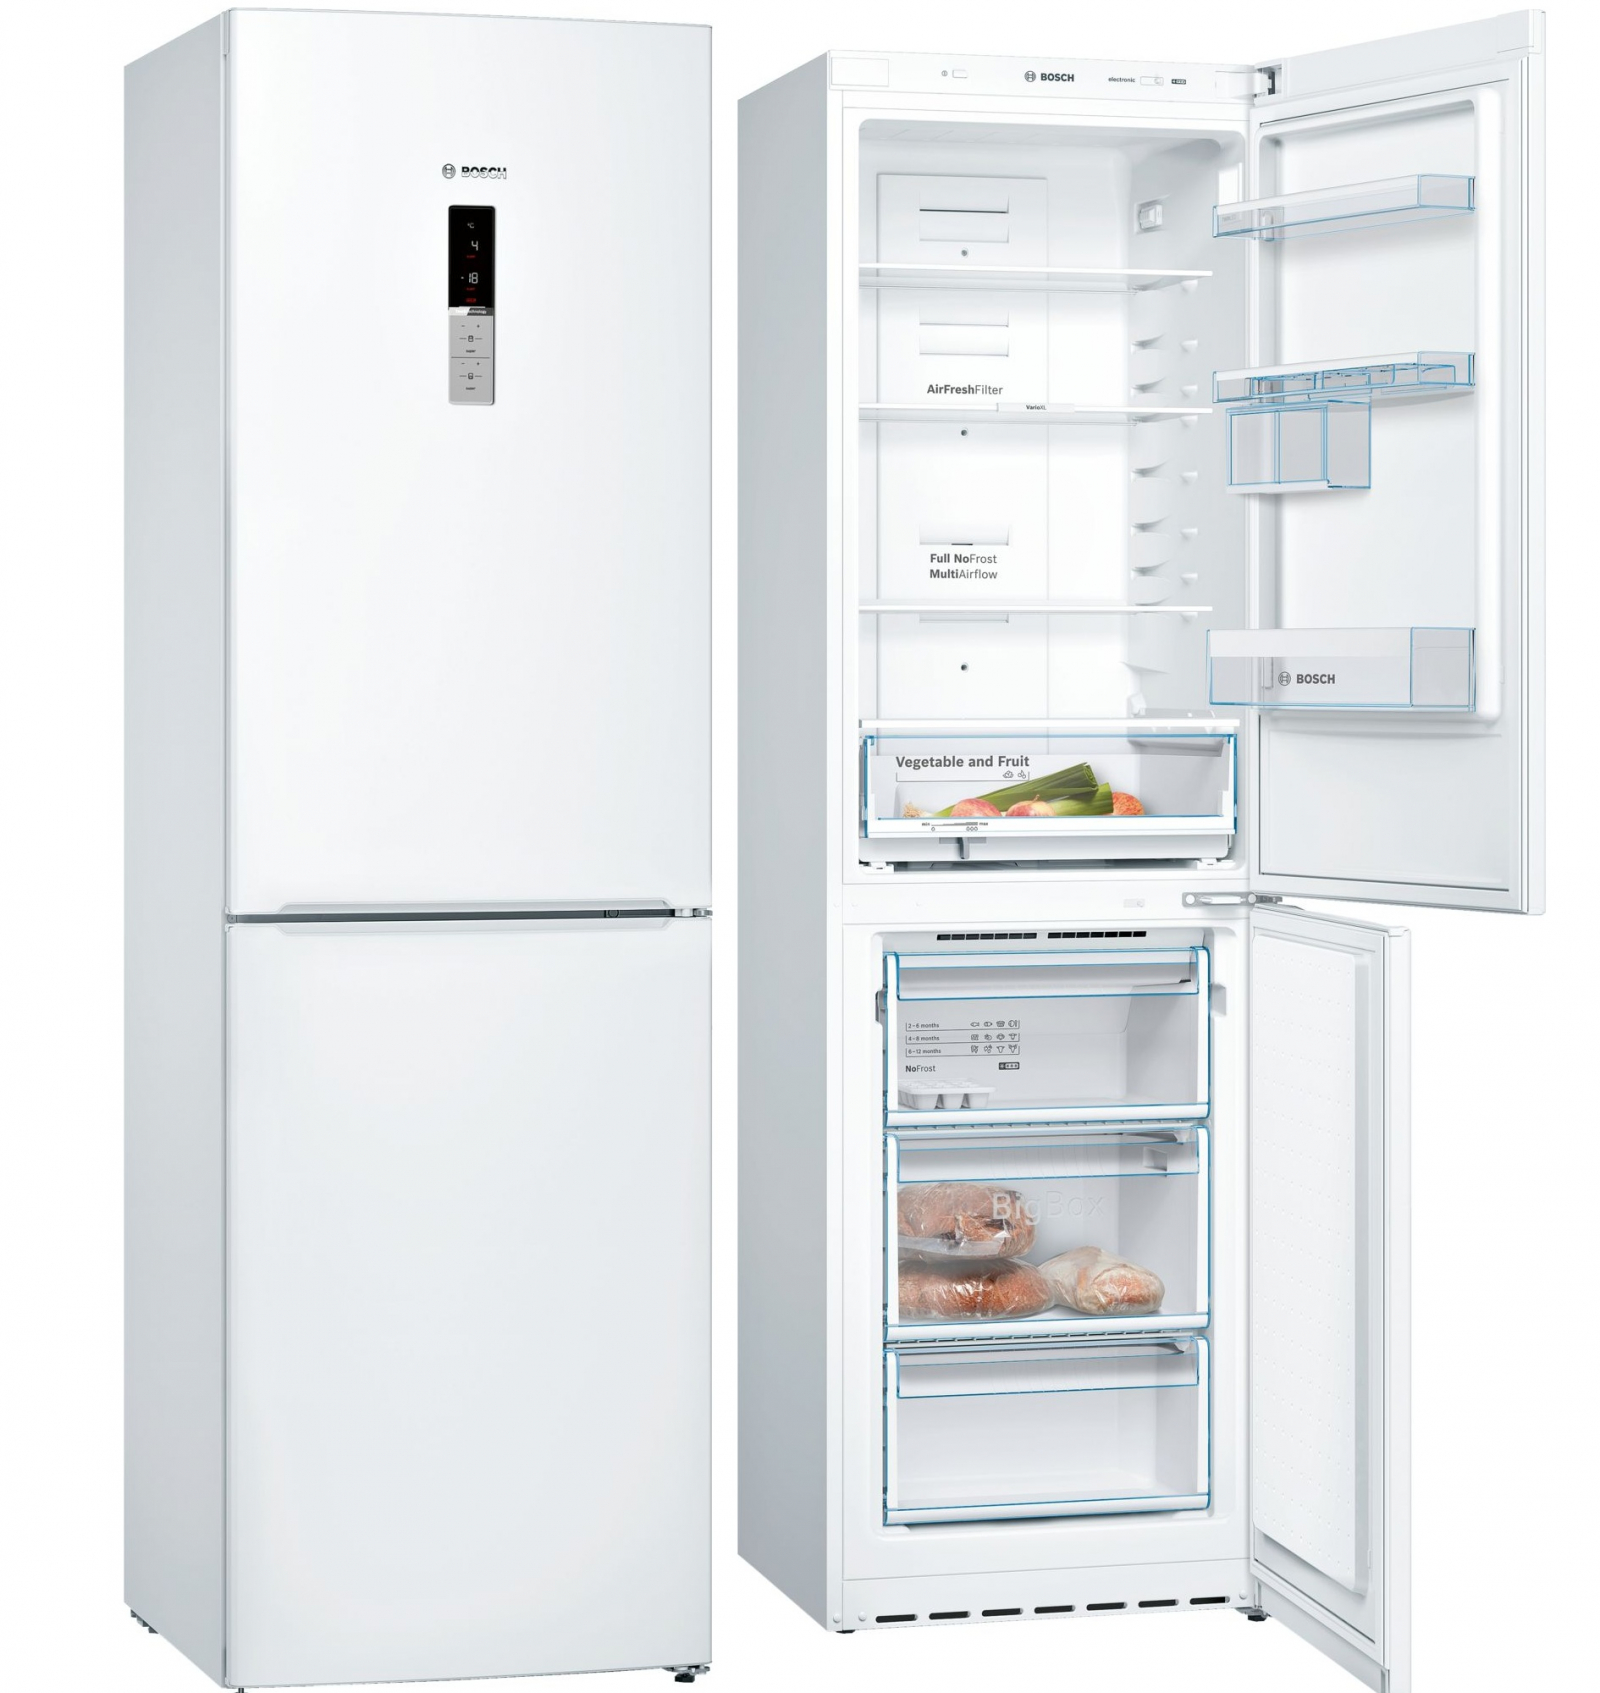 холодильник bosch kgn39vw17r, купить в Красноярске холодильник bosch kgn39vw17r,  купить в Красноярске дешево холодильник bosch kgn39vw17r, купить в Красноярске минимальной цене холодильник bosch kgn39vw17r